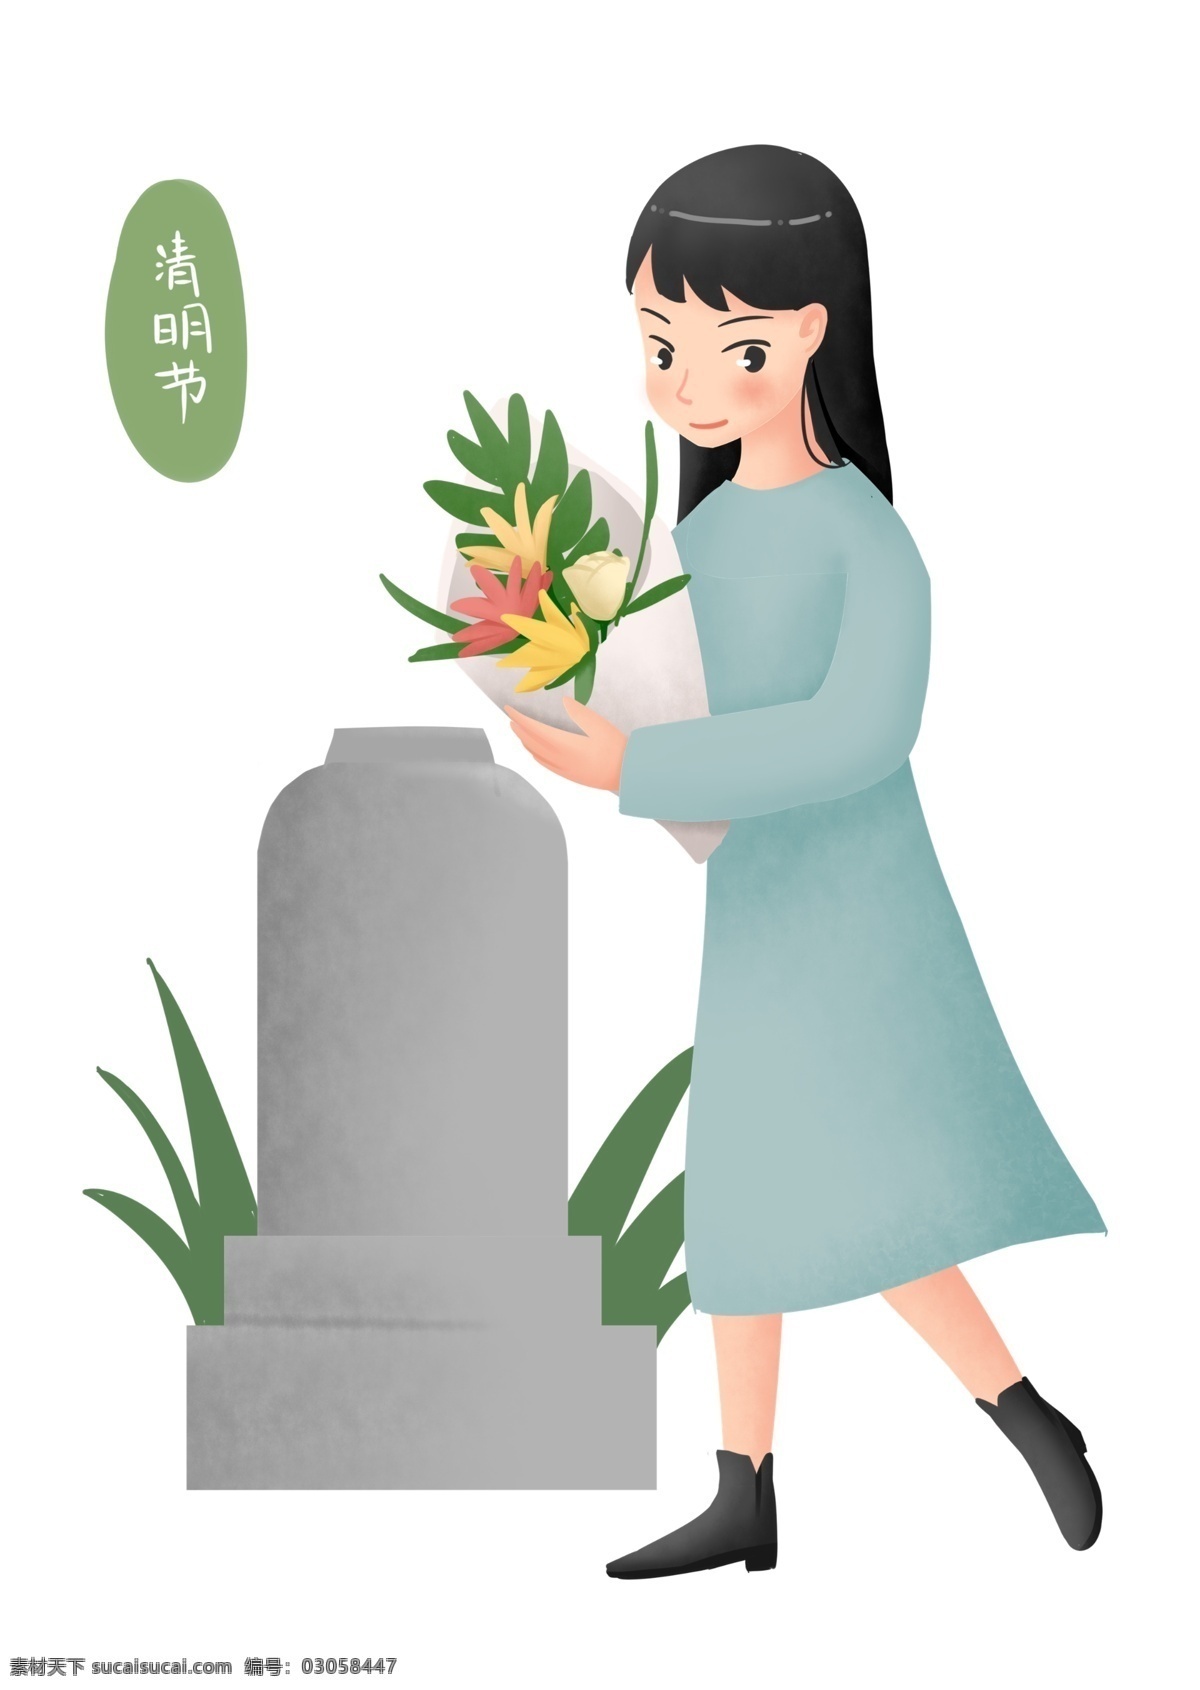 清明节 祭祀 小女孩 人物 插画 祭祀的小女孩 彩色的鲜花 祭奠亲人 灰色的墓碑 绿色的叶子